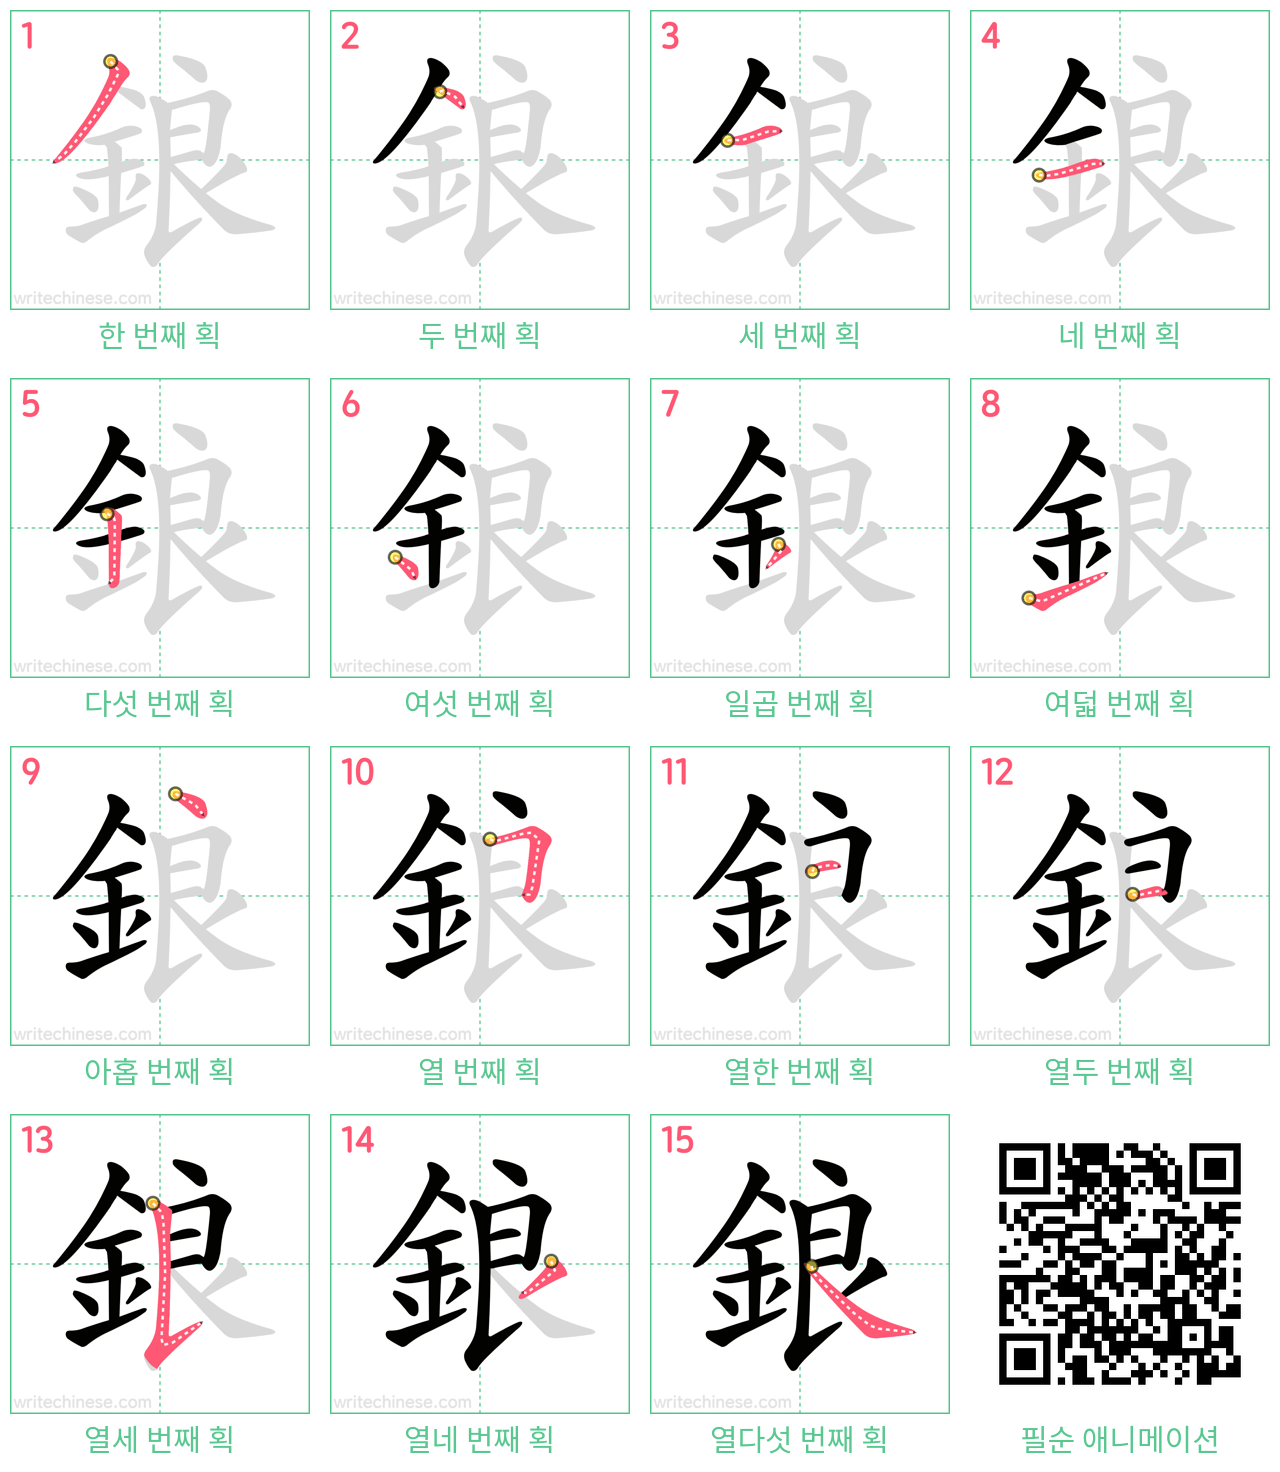 鋃 step-by-step stroke order diagrams